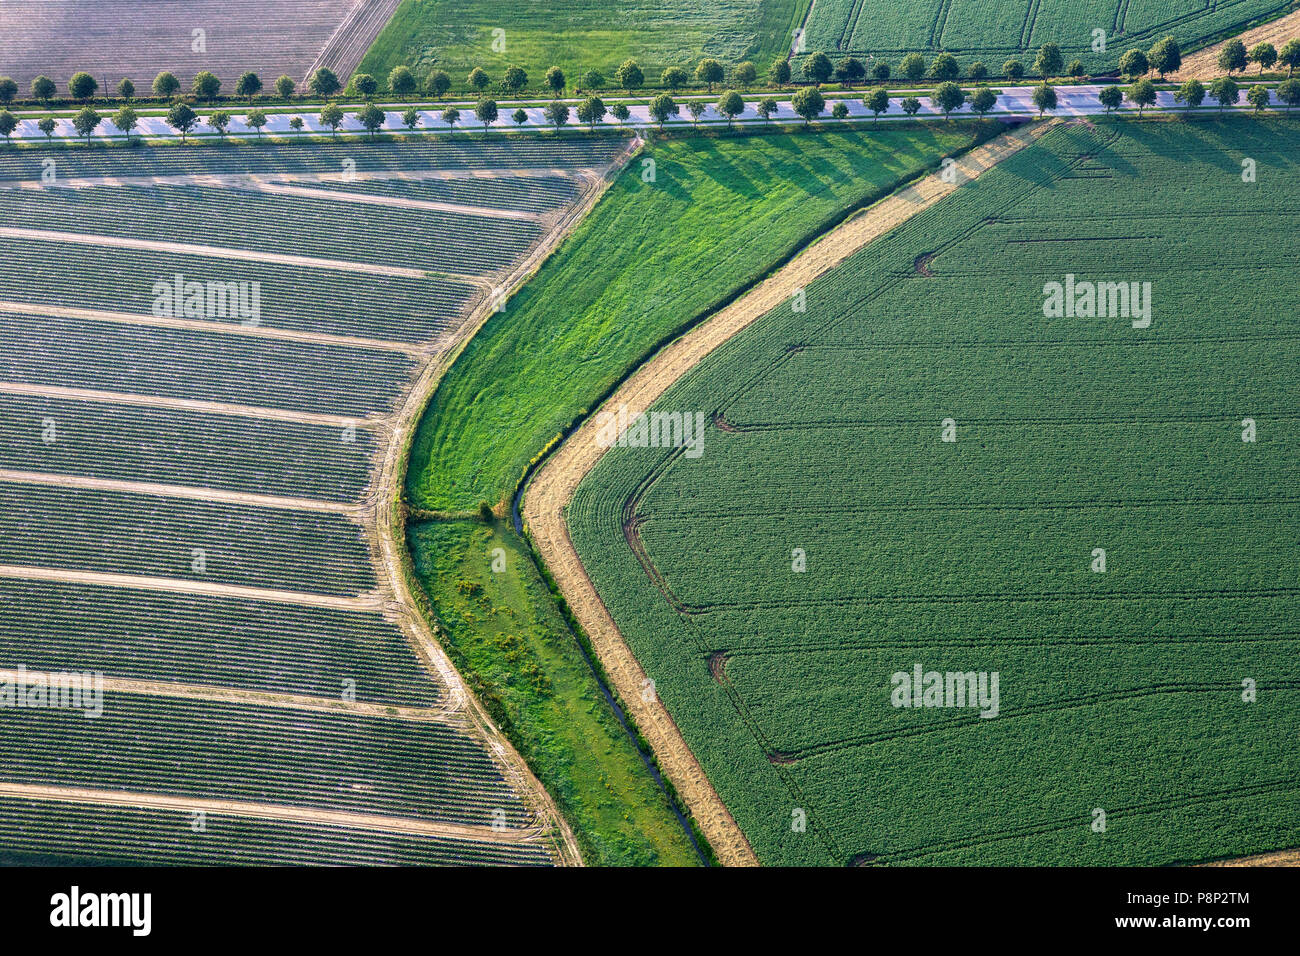 Vue aérienne de champs agricoles et une route bordée d'arbres Banque D'Images